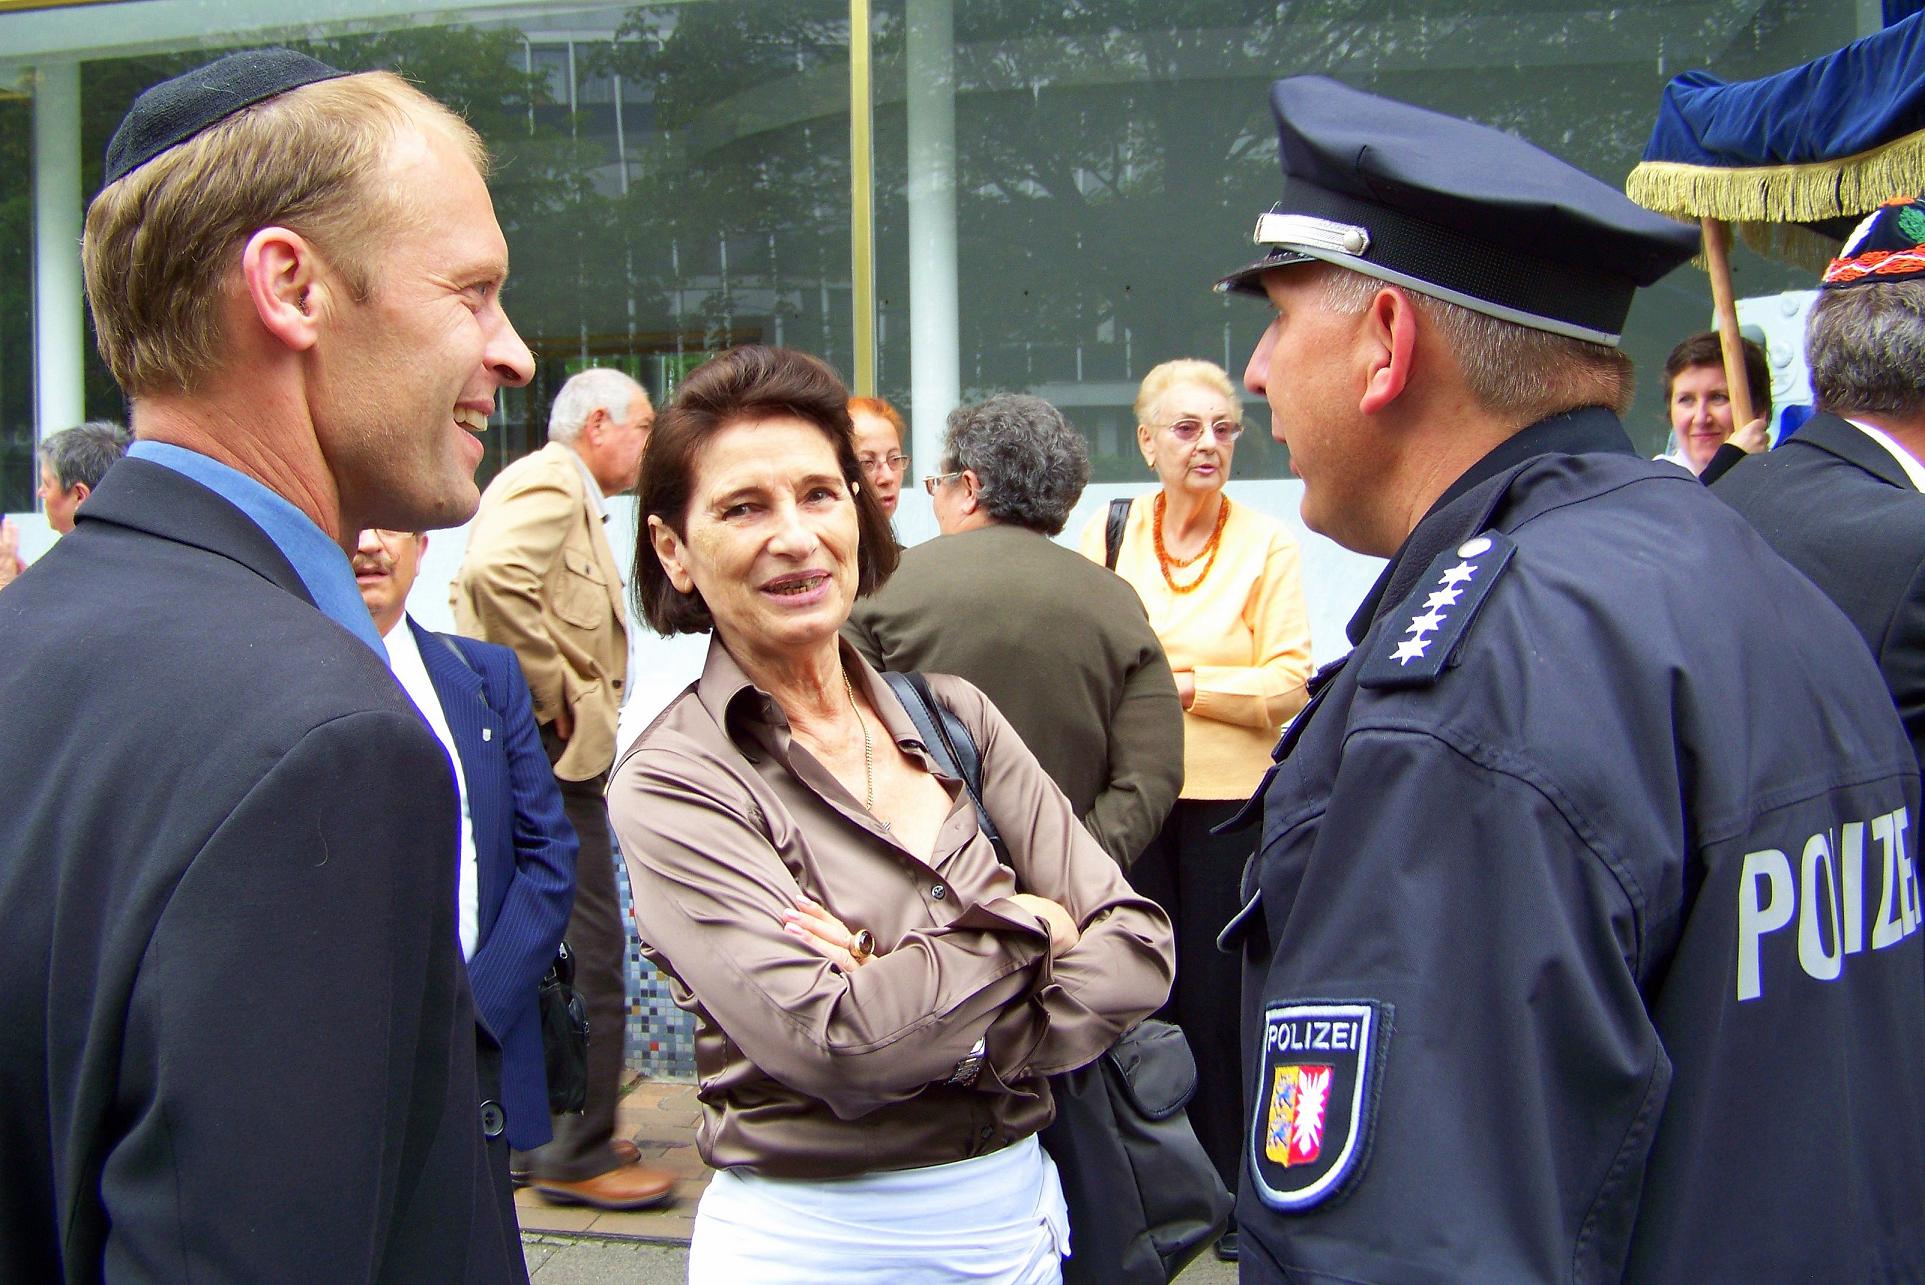 Fröhliche Einweihung der neuen Gemeinderäume im Flamweg - die Vorsitzende Alisa Fühlbrügge (Mitte) im Gespräch mit Walter Blender (links) und den Helfern der örtlichen Polizei